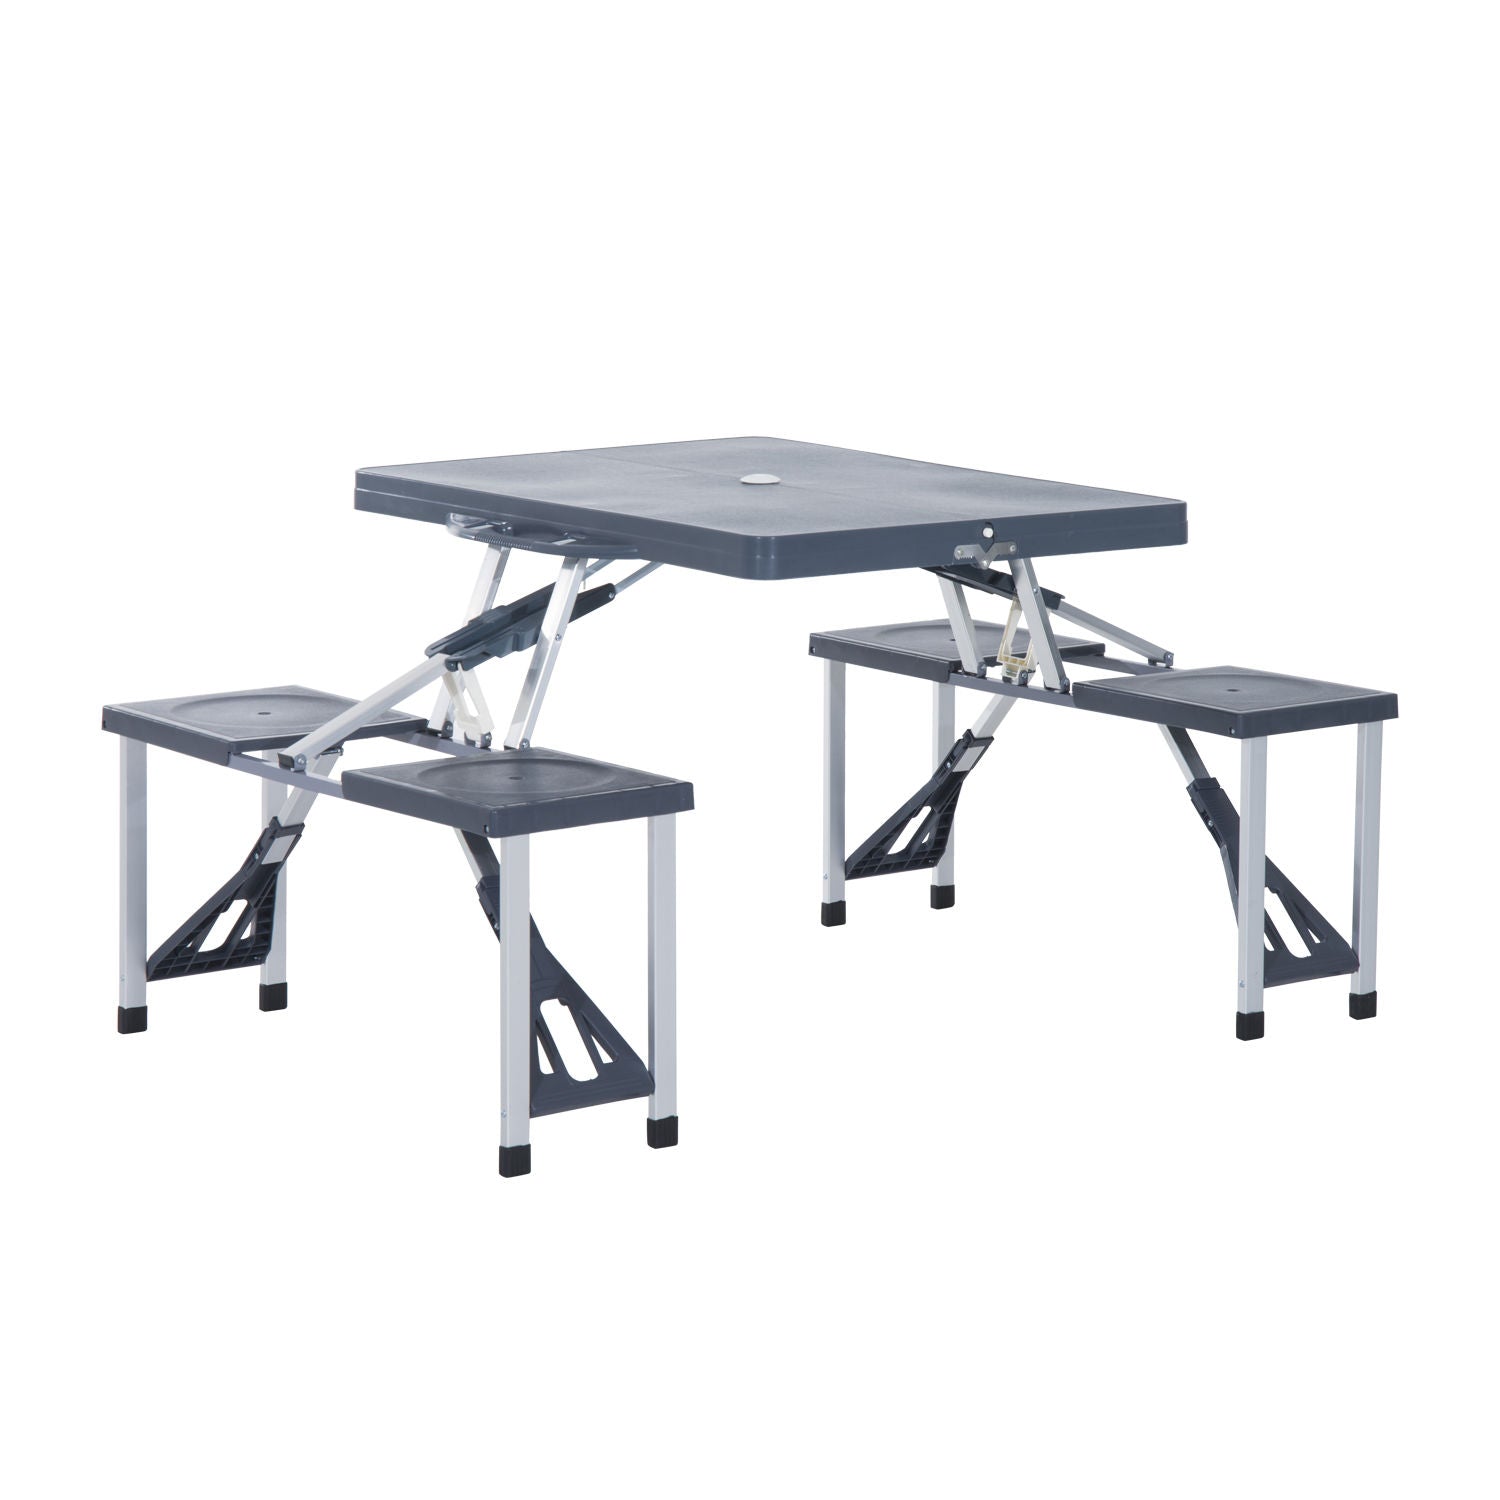 Table de pique-nique Nancy's Hemet - Table pliante - Table de camping - Table - 4 chaises - Groupe de sièges - Valise de camping - Aluminium - Gris 